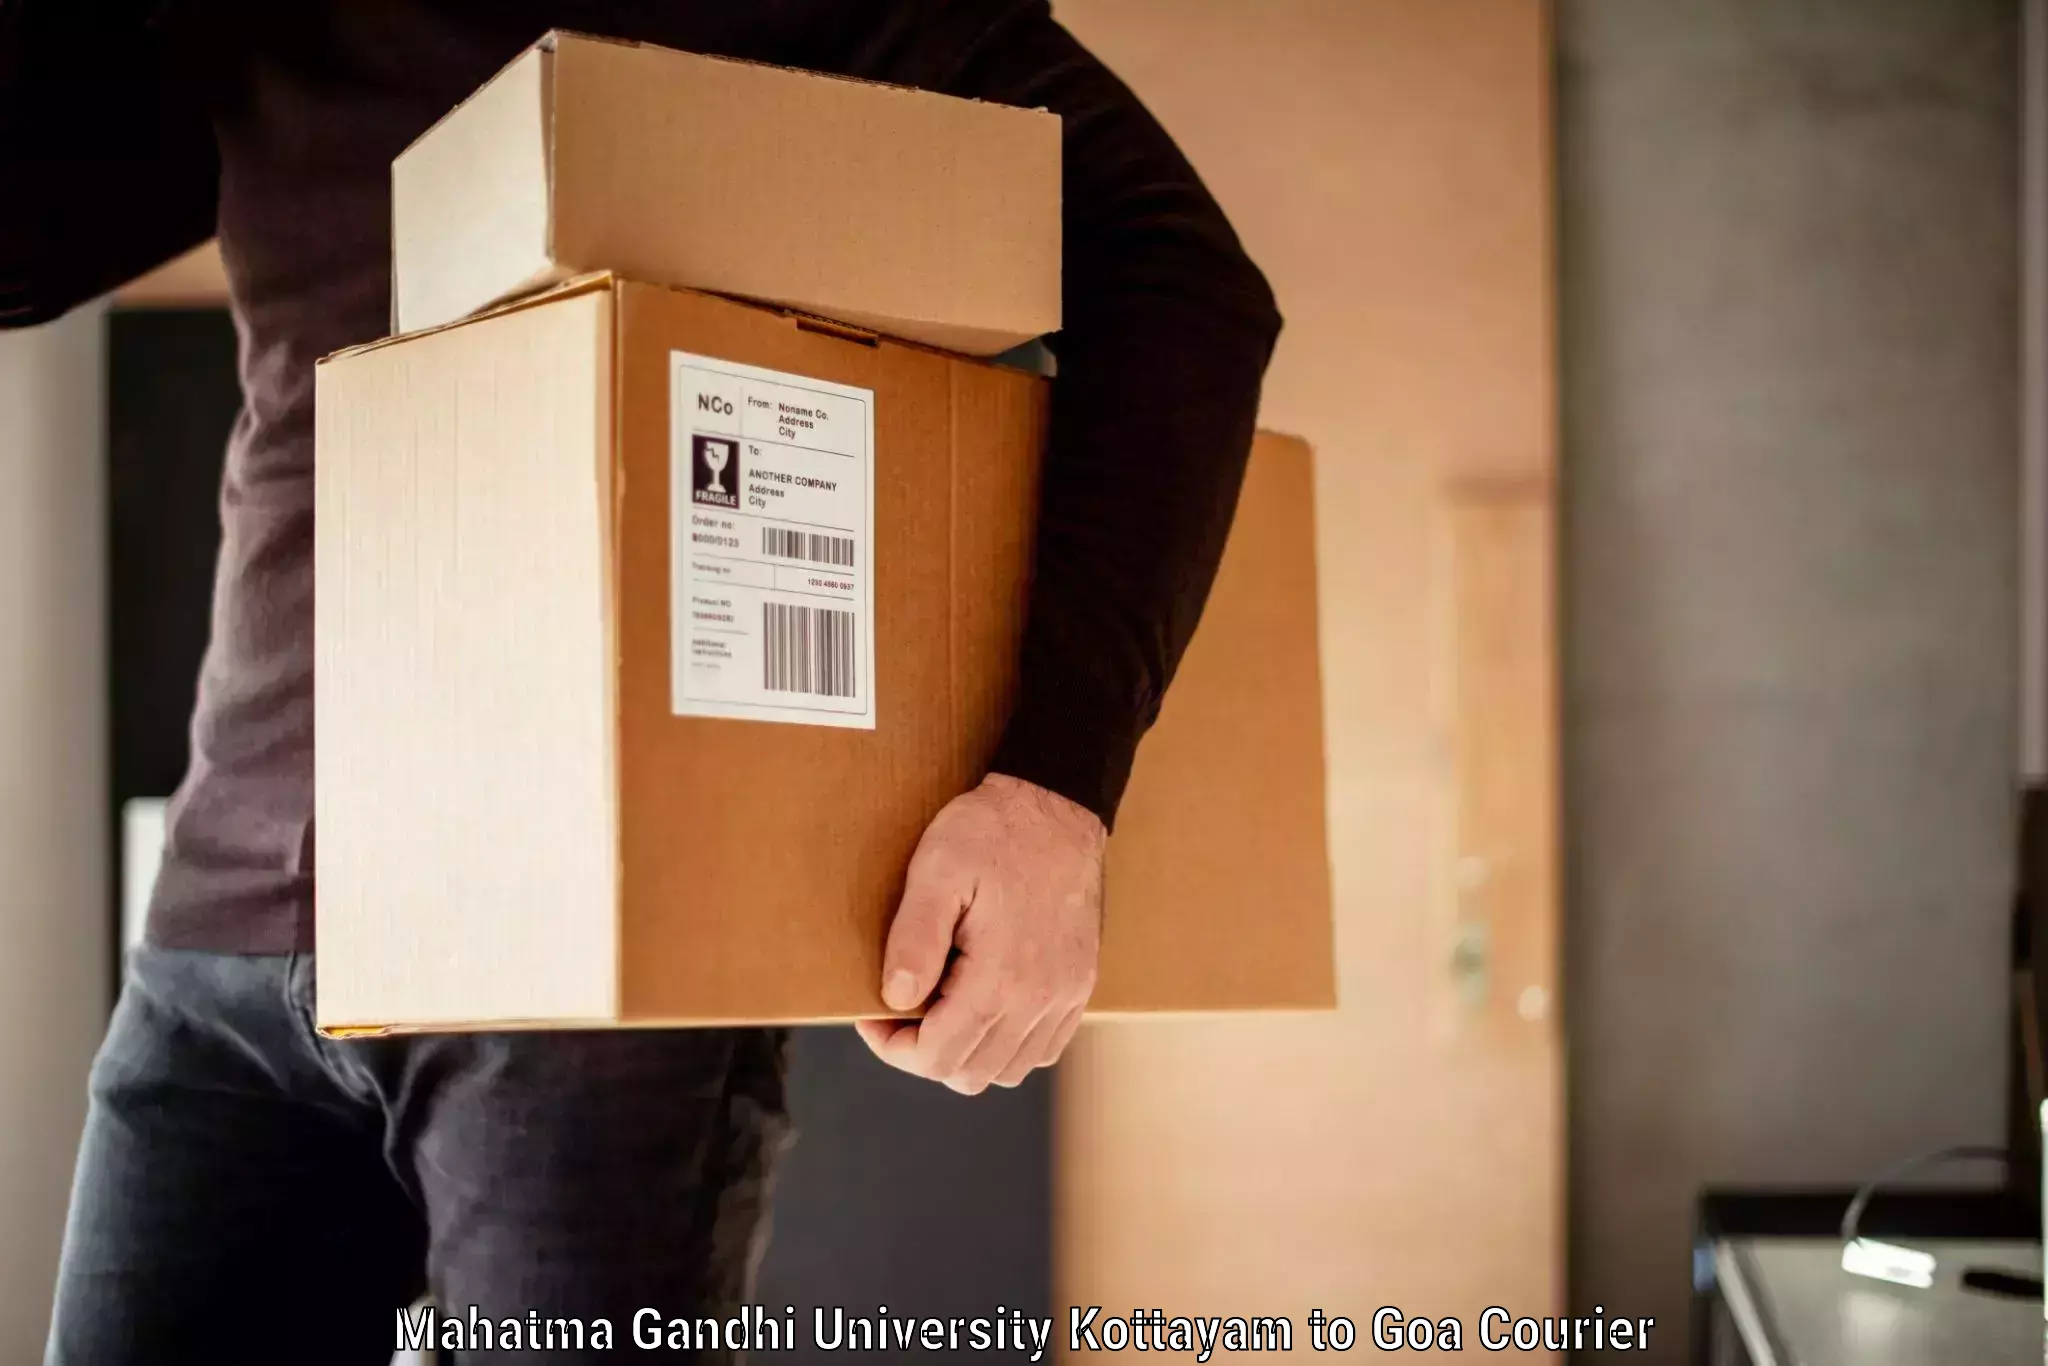 Baggage shipping optimization Mahatma Gandhi University Kottayam to Panaji